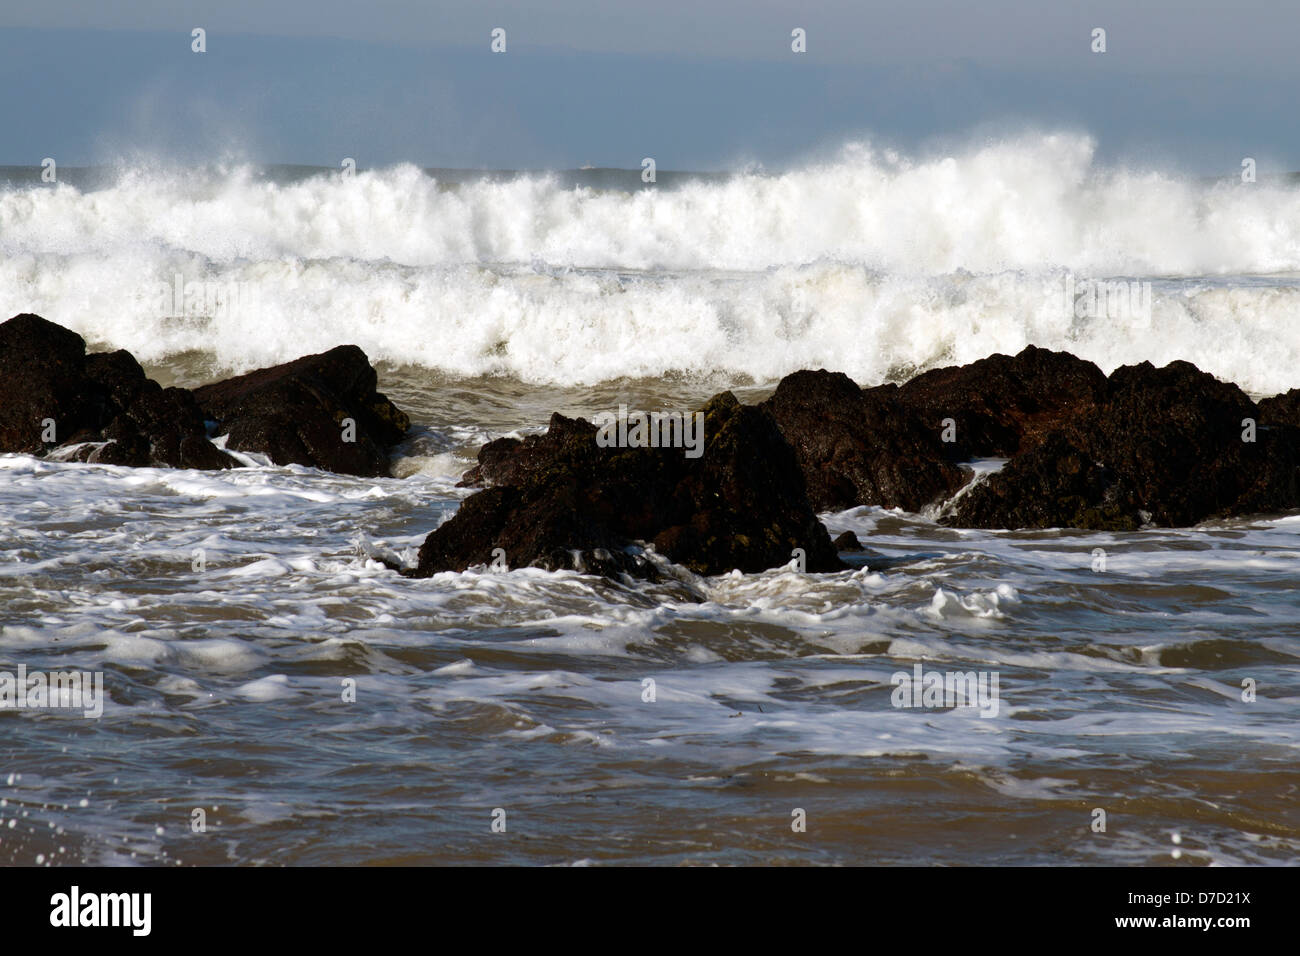 Tempesta onde comandato off freshwater west beach, Pembrokeshire, primavera 2013 Foto Stock